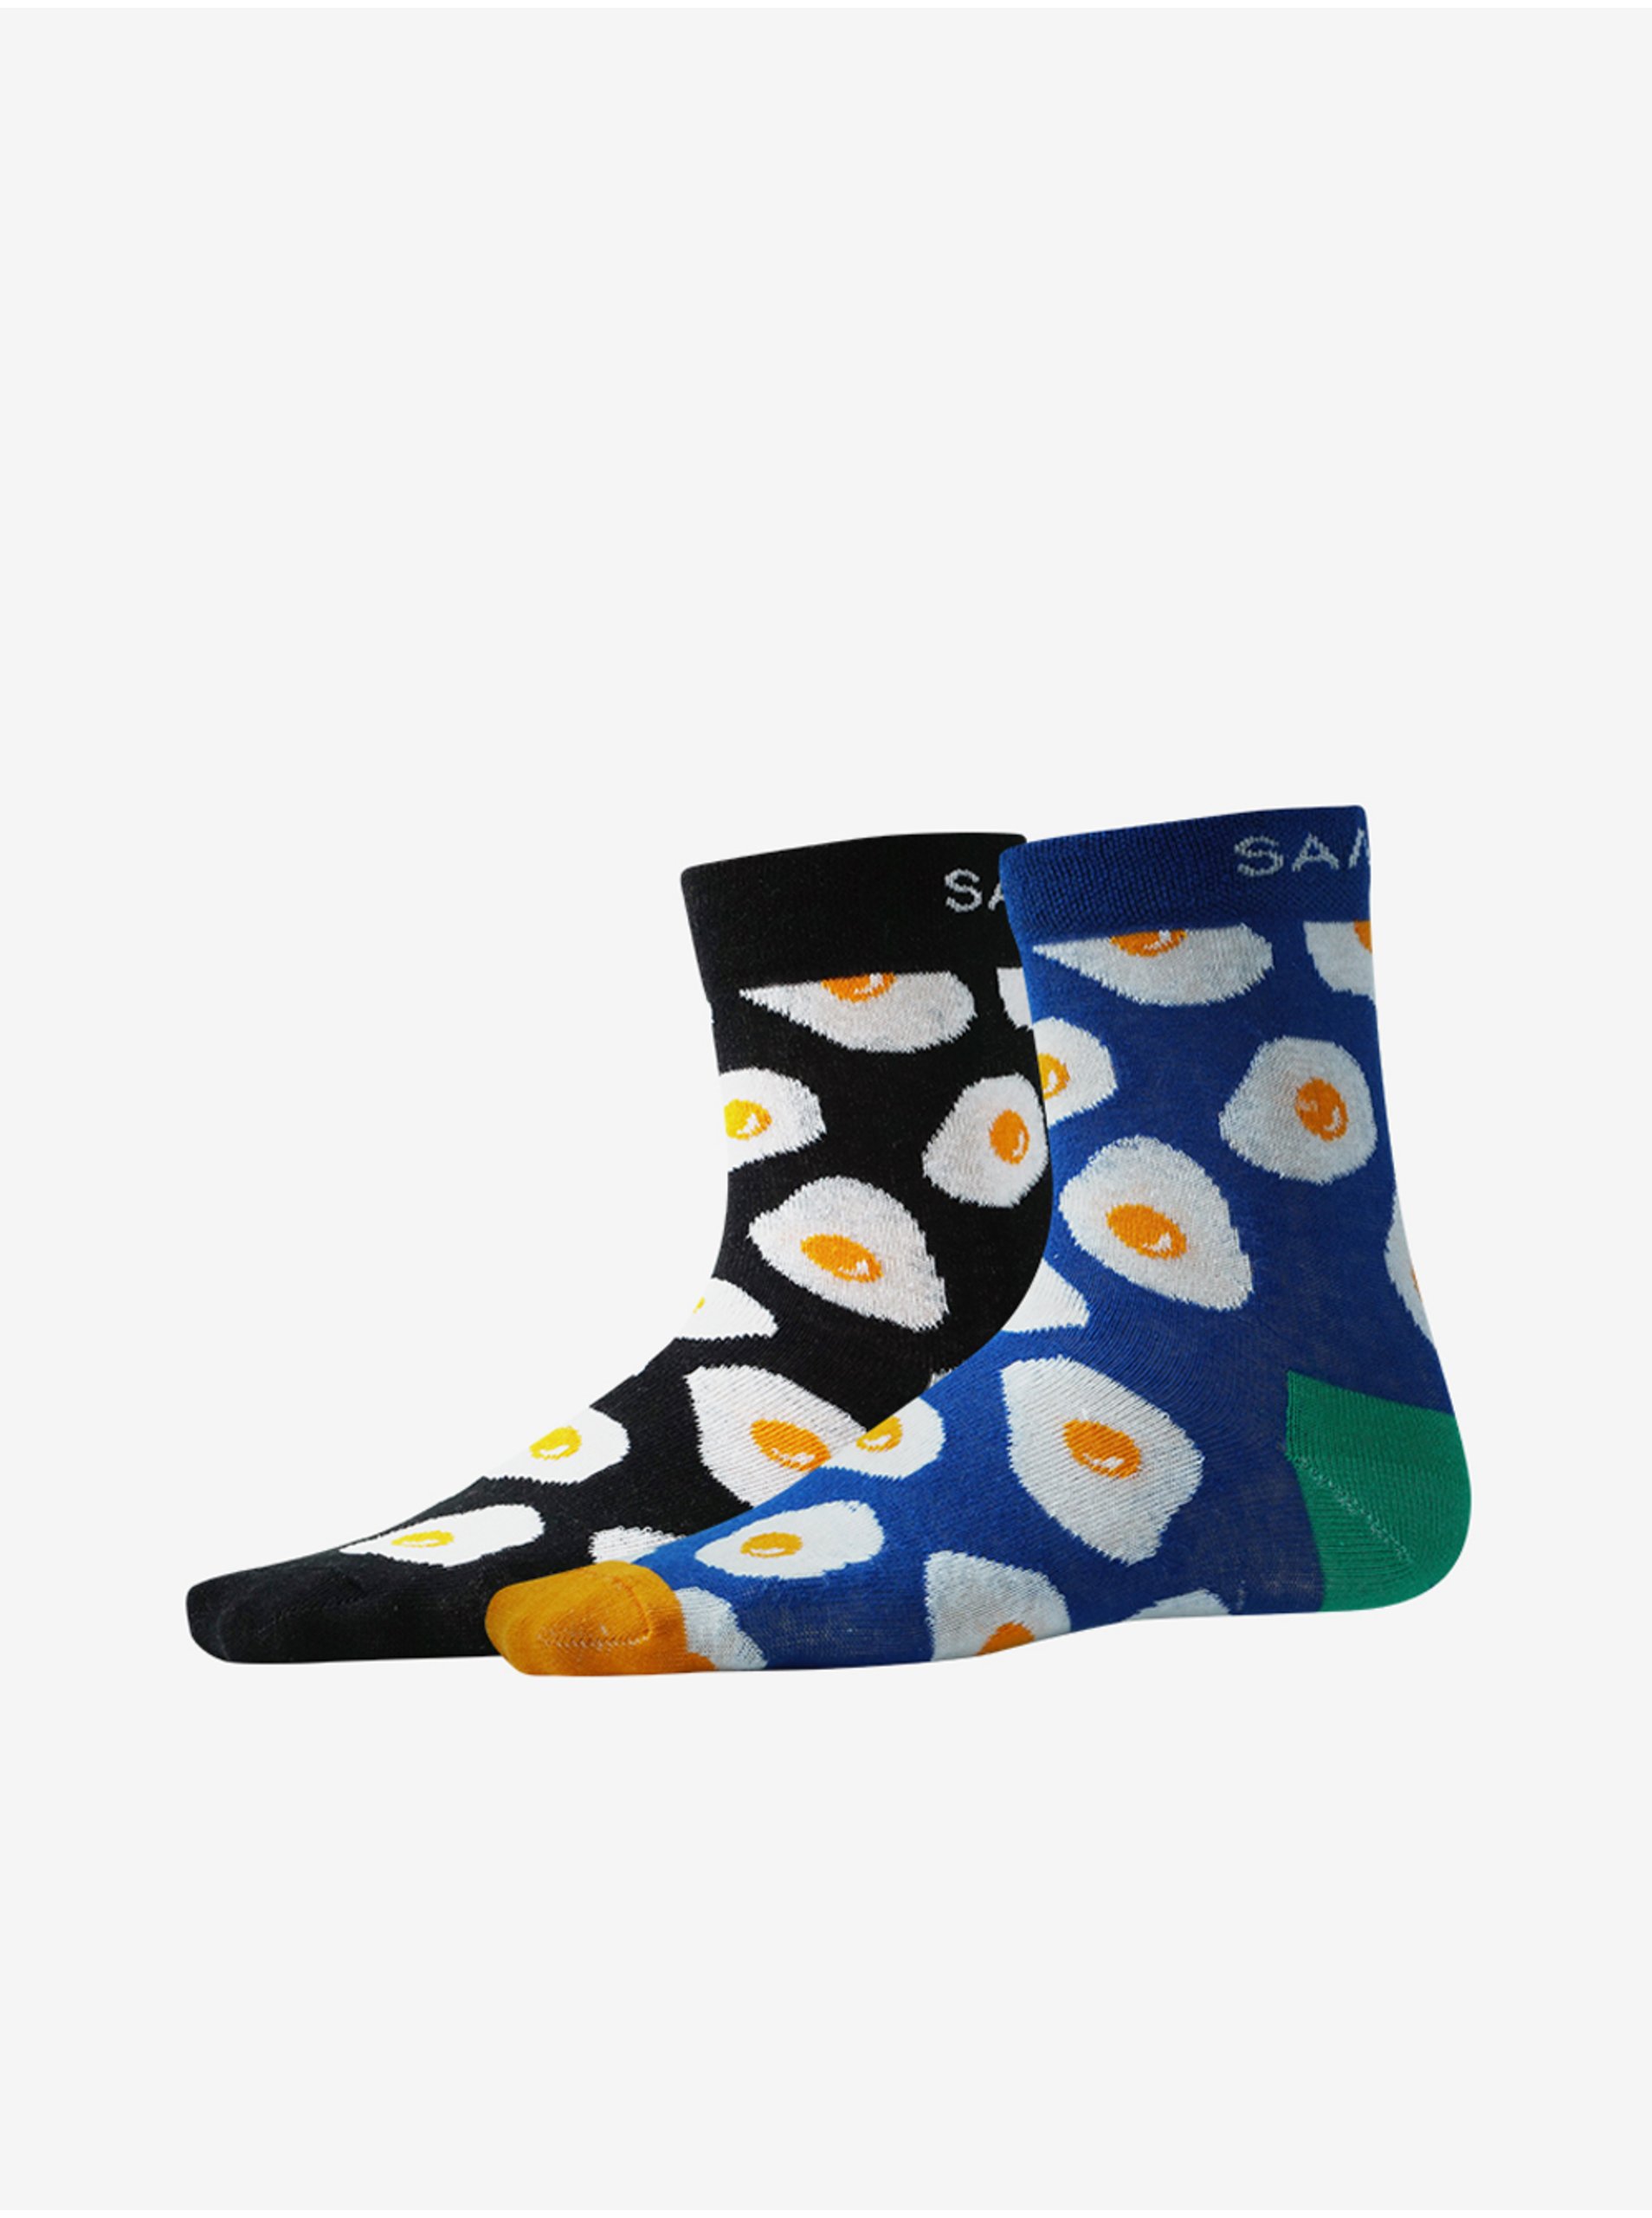 E-shop Sada dvoch párov vzorovaných ponožiek v čiernej a modrej farbe SAM 73 Anidal